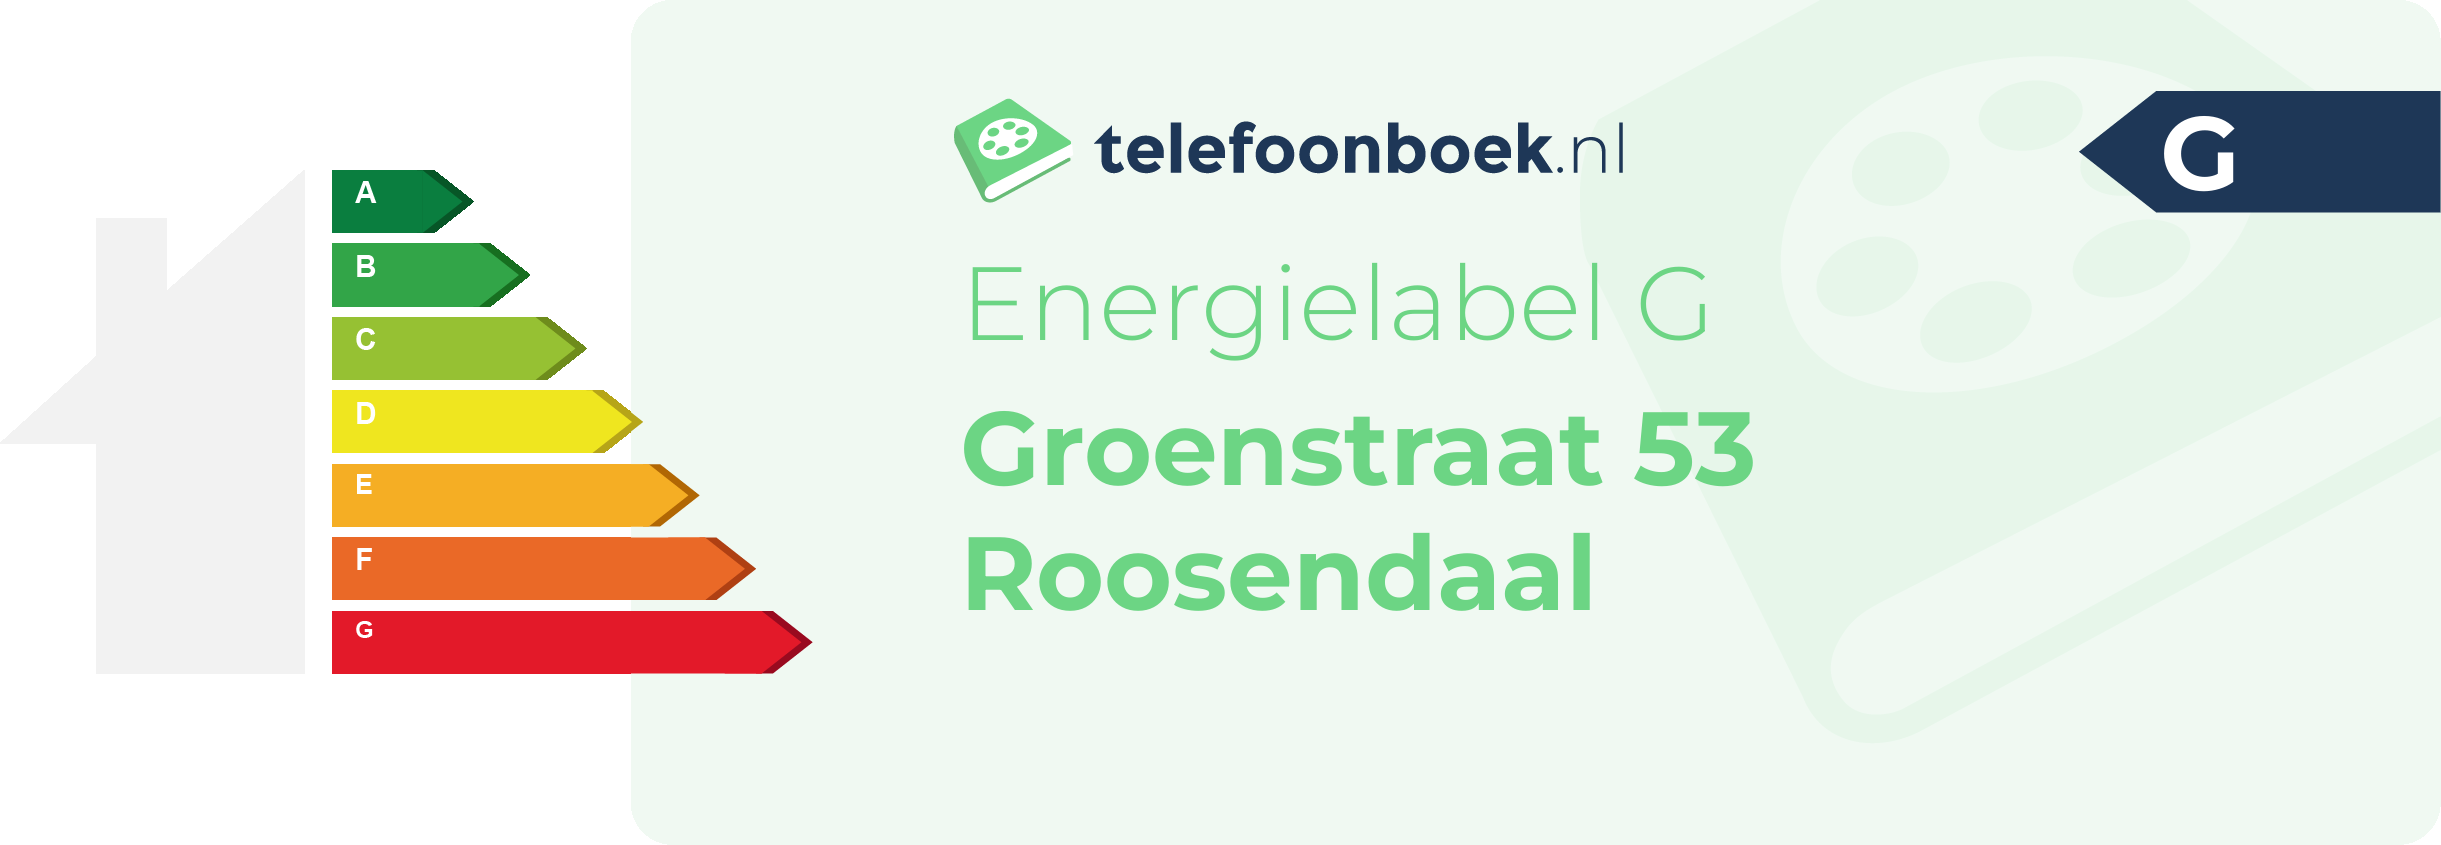 Energielabel Groenstraat 53 Roosendaal